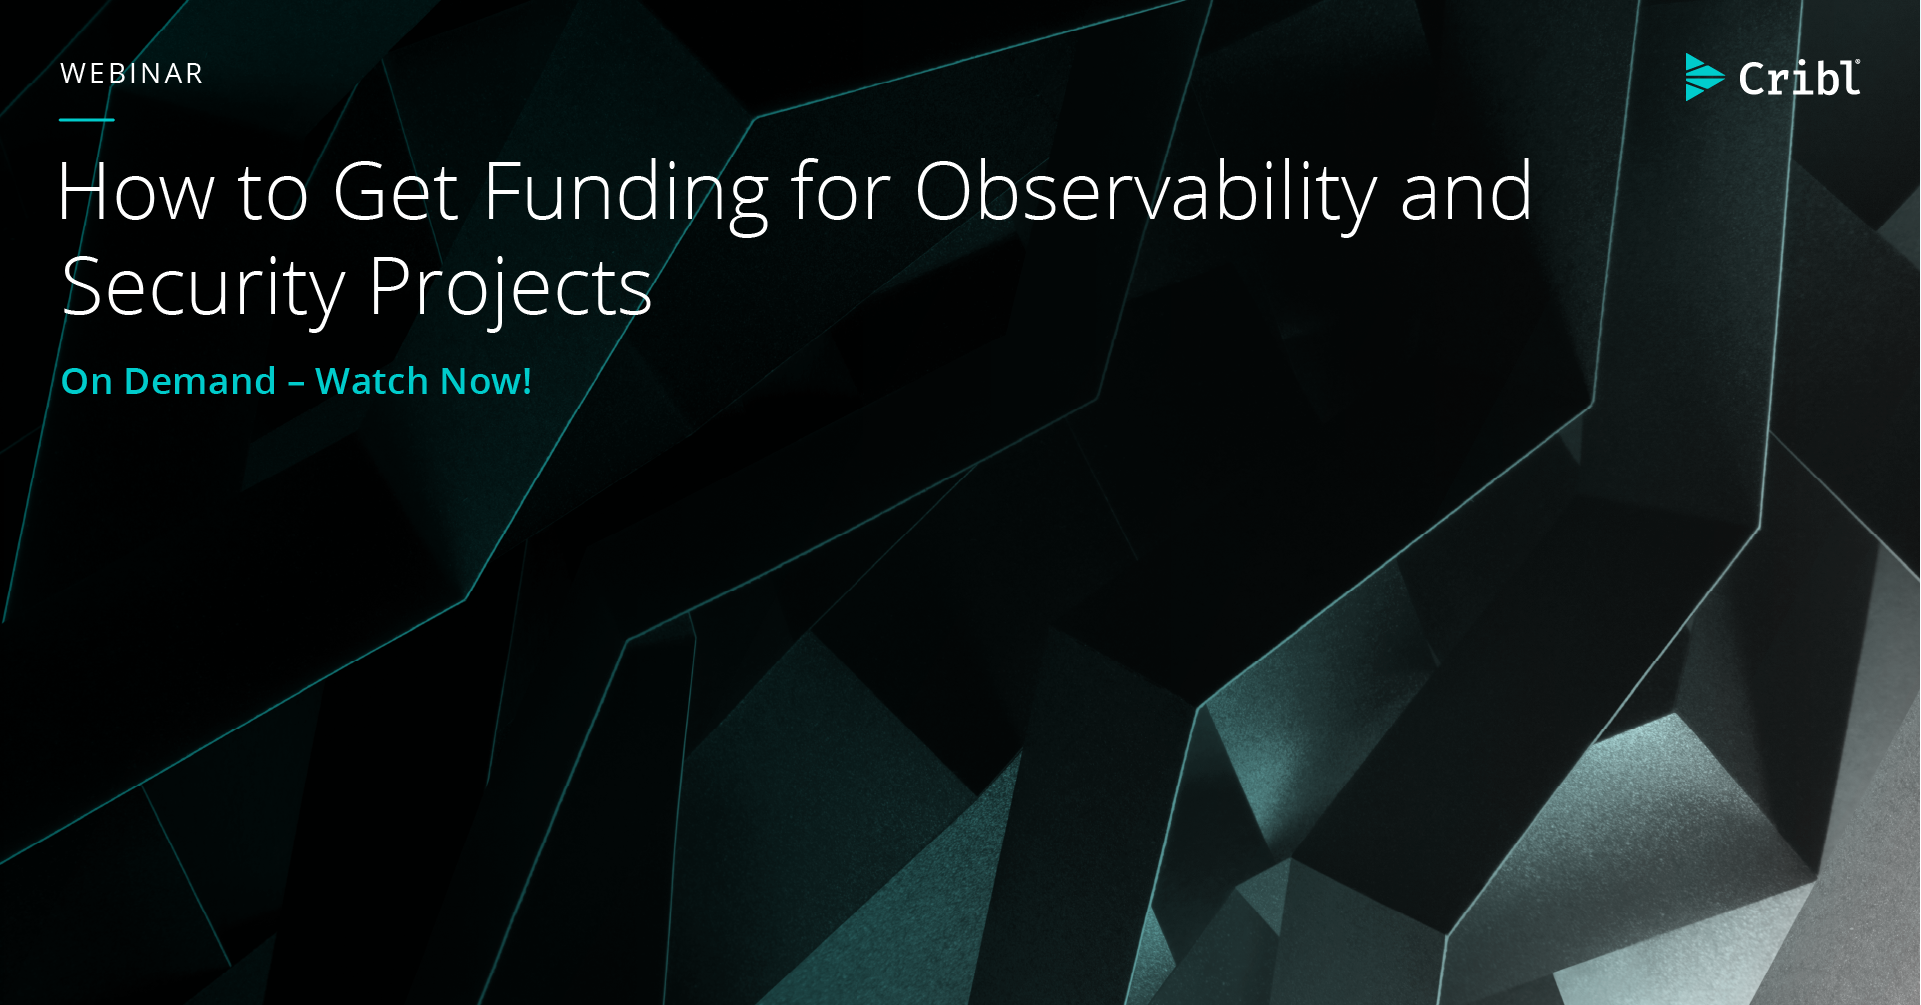 Funding for Observability